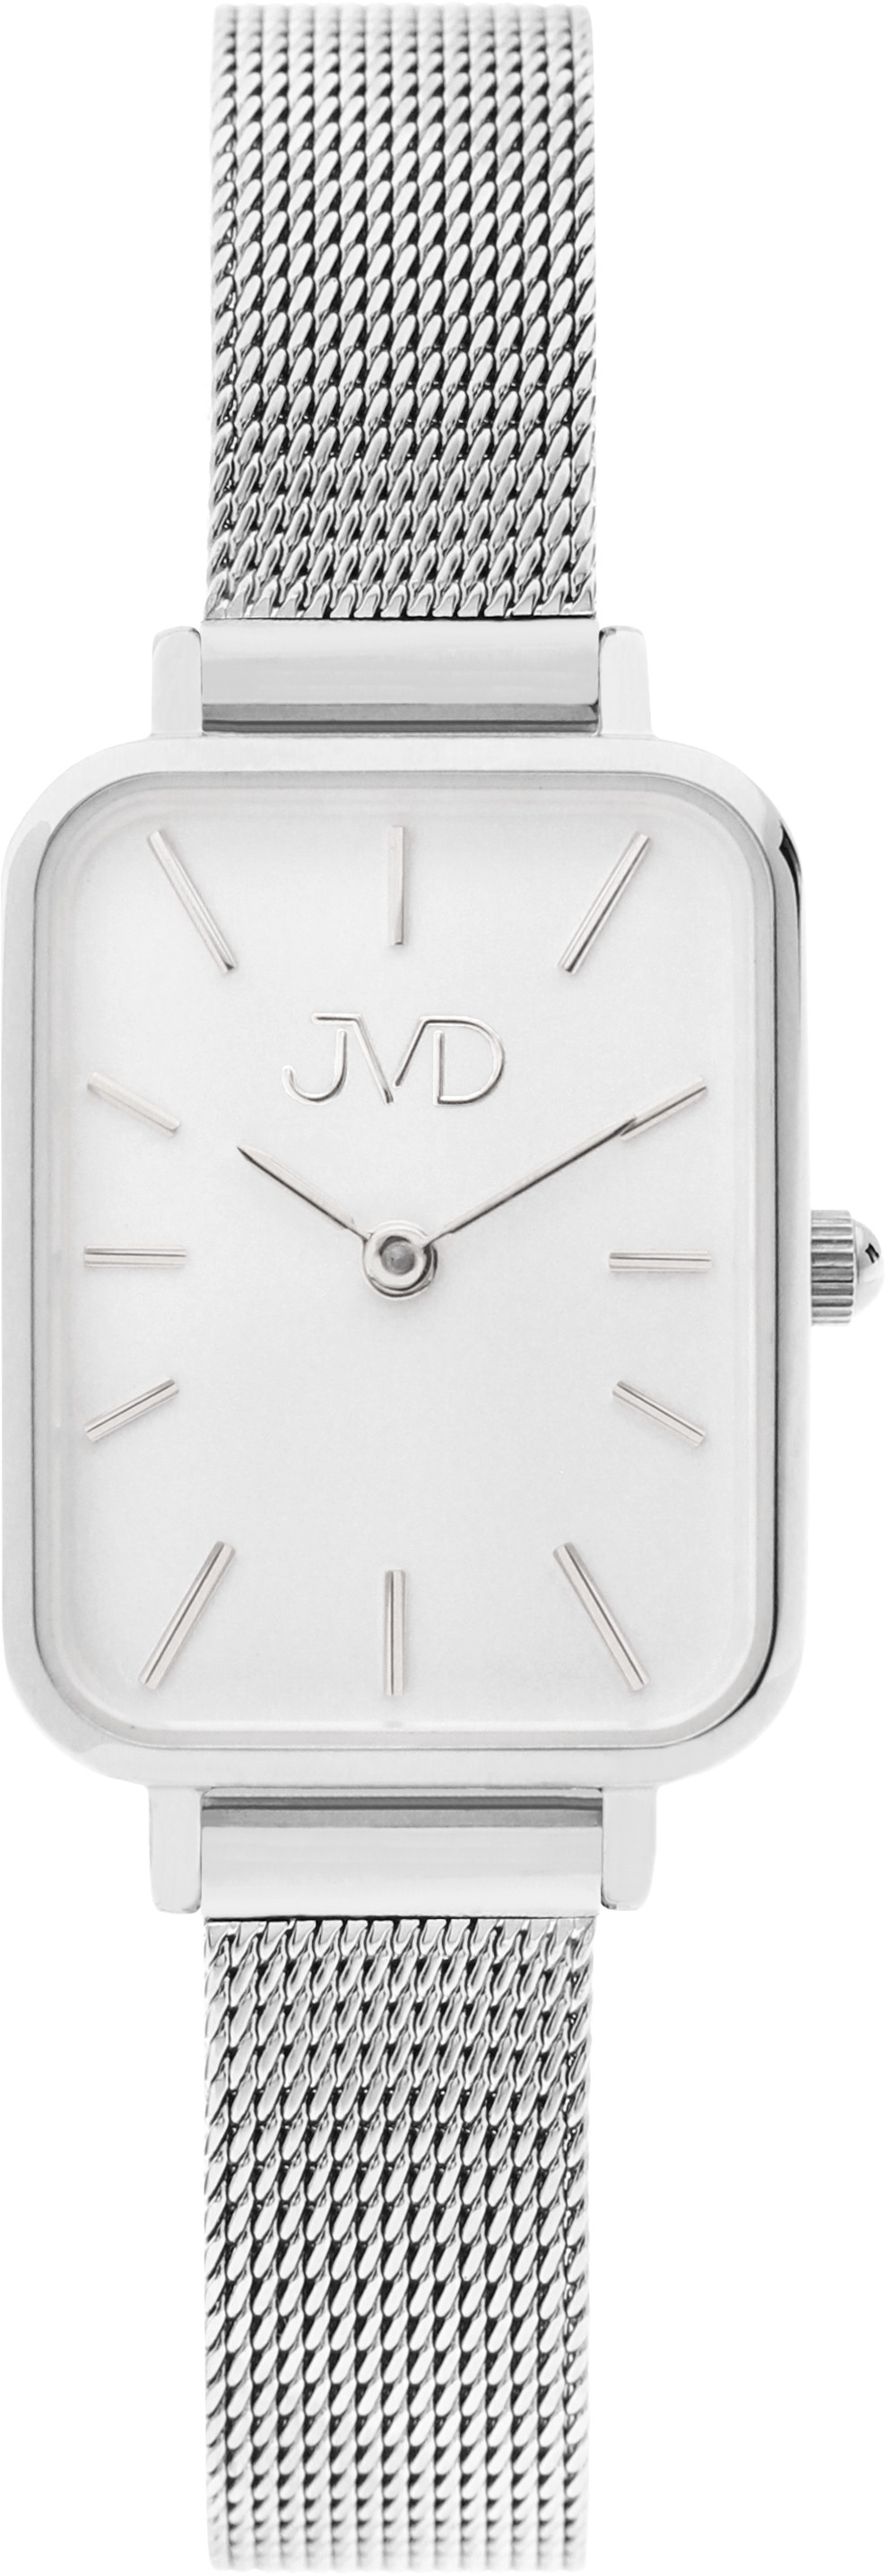 JVD -  Analogové hodinky J-TS50